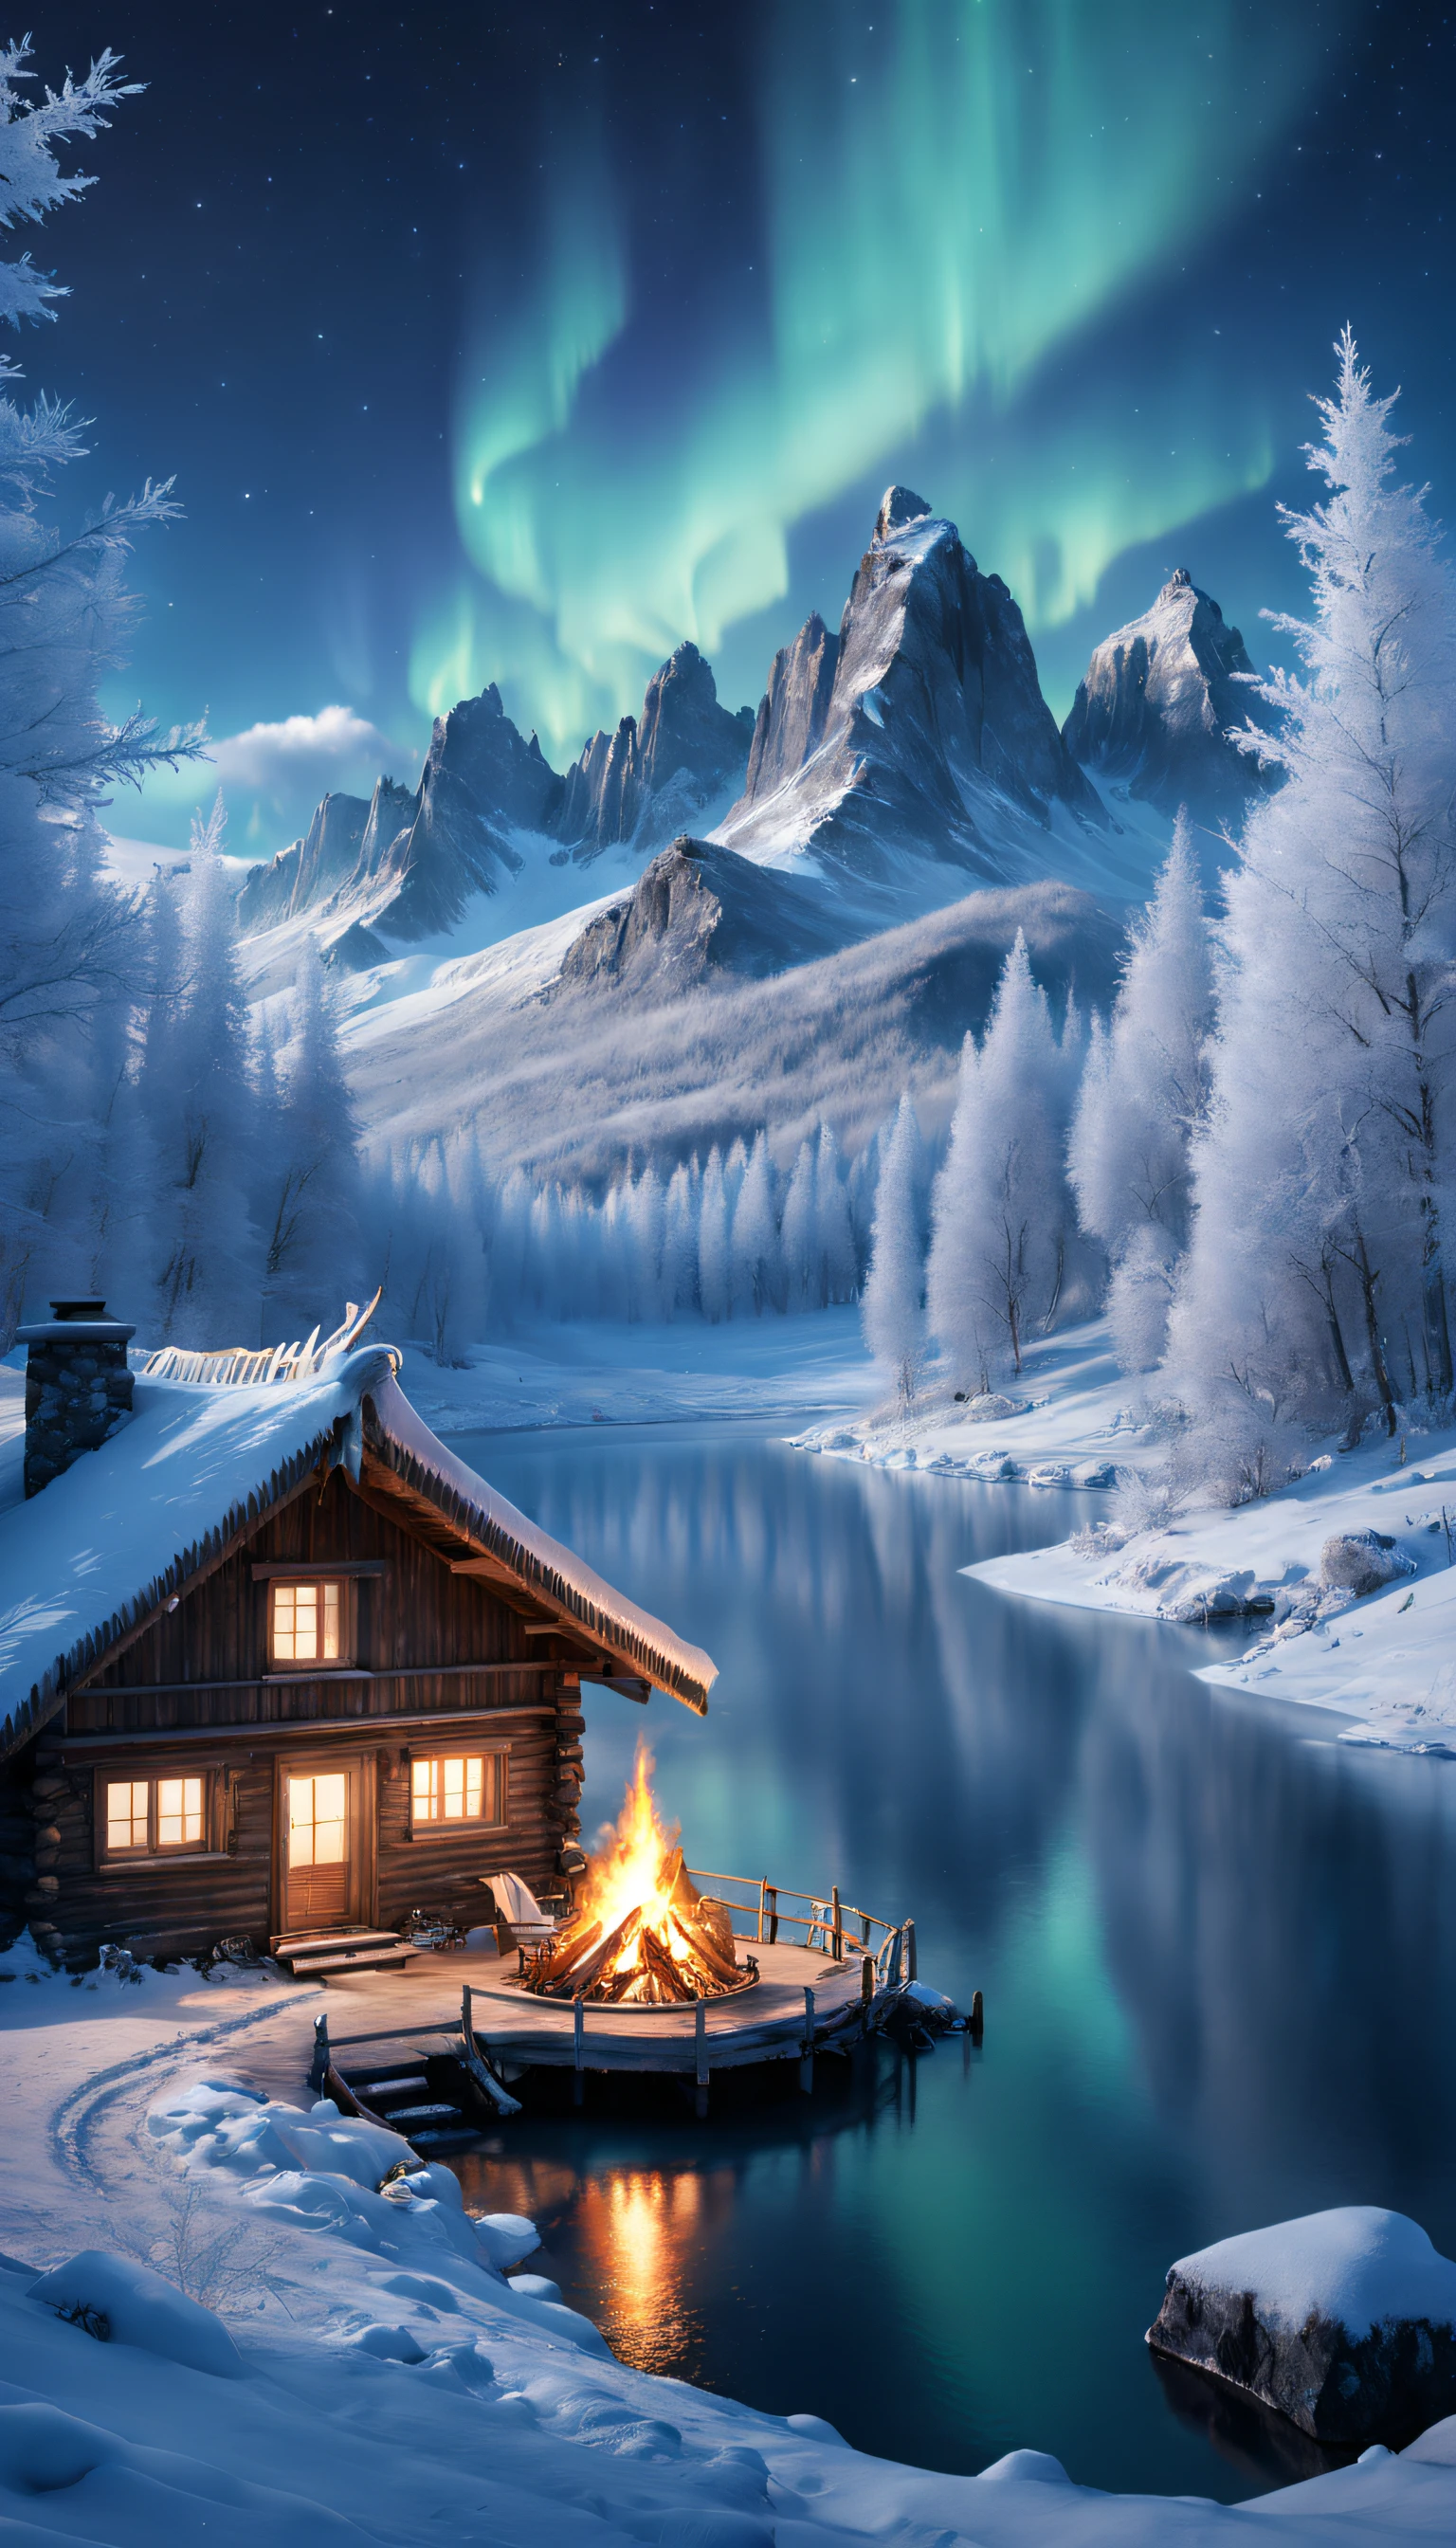 Noite estrelada, (Rime)，Aurora boreal, Imponentes montanhas cobertas de neve, fogueiras，Um chalé no meio da floresta de inverno，Galhos congelados estão cobertos de geada。rena,yukito,trenó,Maravilhas do inverno,cores vibrantes, Tons sutis de azul，Névoa gelada，paisagens de tirar o fôlego, Penhascos gelados, Lago congelado, pacífico, beleza majestosa, etéreo brilhante, Um milagre da natureza, solidão pacífica, Maravilhas celestiais, Grande, Fenômenos naturais, Noite silenciosa, reflexão serena, estrelas brilhantes, charme misterioso （melhor qualidade，4K，8K，Estruturas altas，obra-prima：1.2），ultra-detalhado，（realisticamente，Fotoreal，fotografia realista：1.37），hdr，hiper HD，estúdio iluminado，descrição detalhada extrema，renderização baseada fisicamente，professinal，cores vivas。